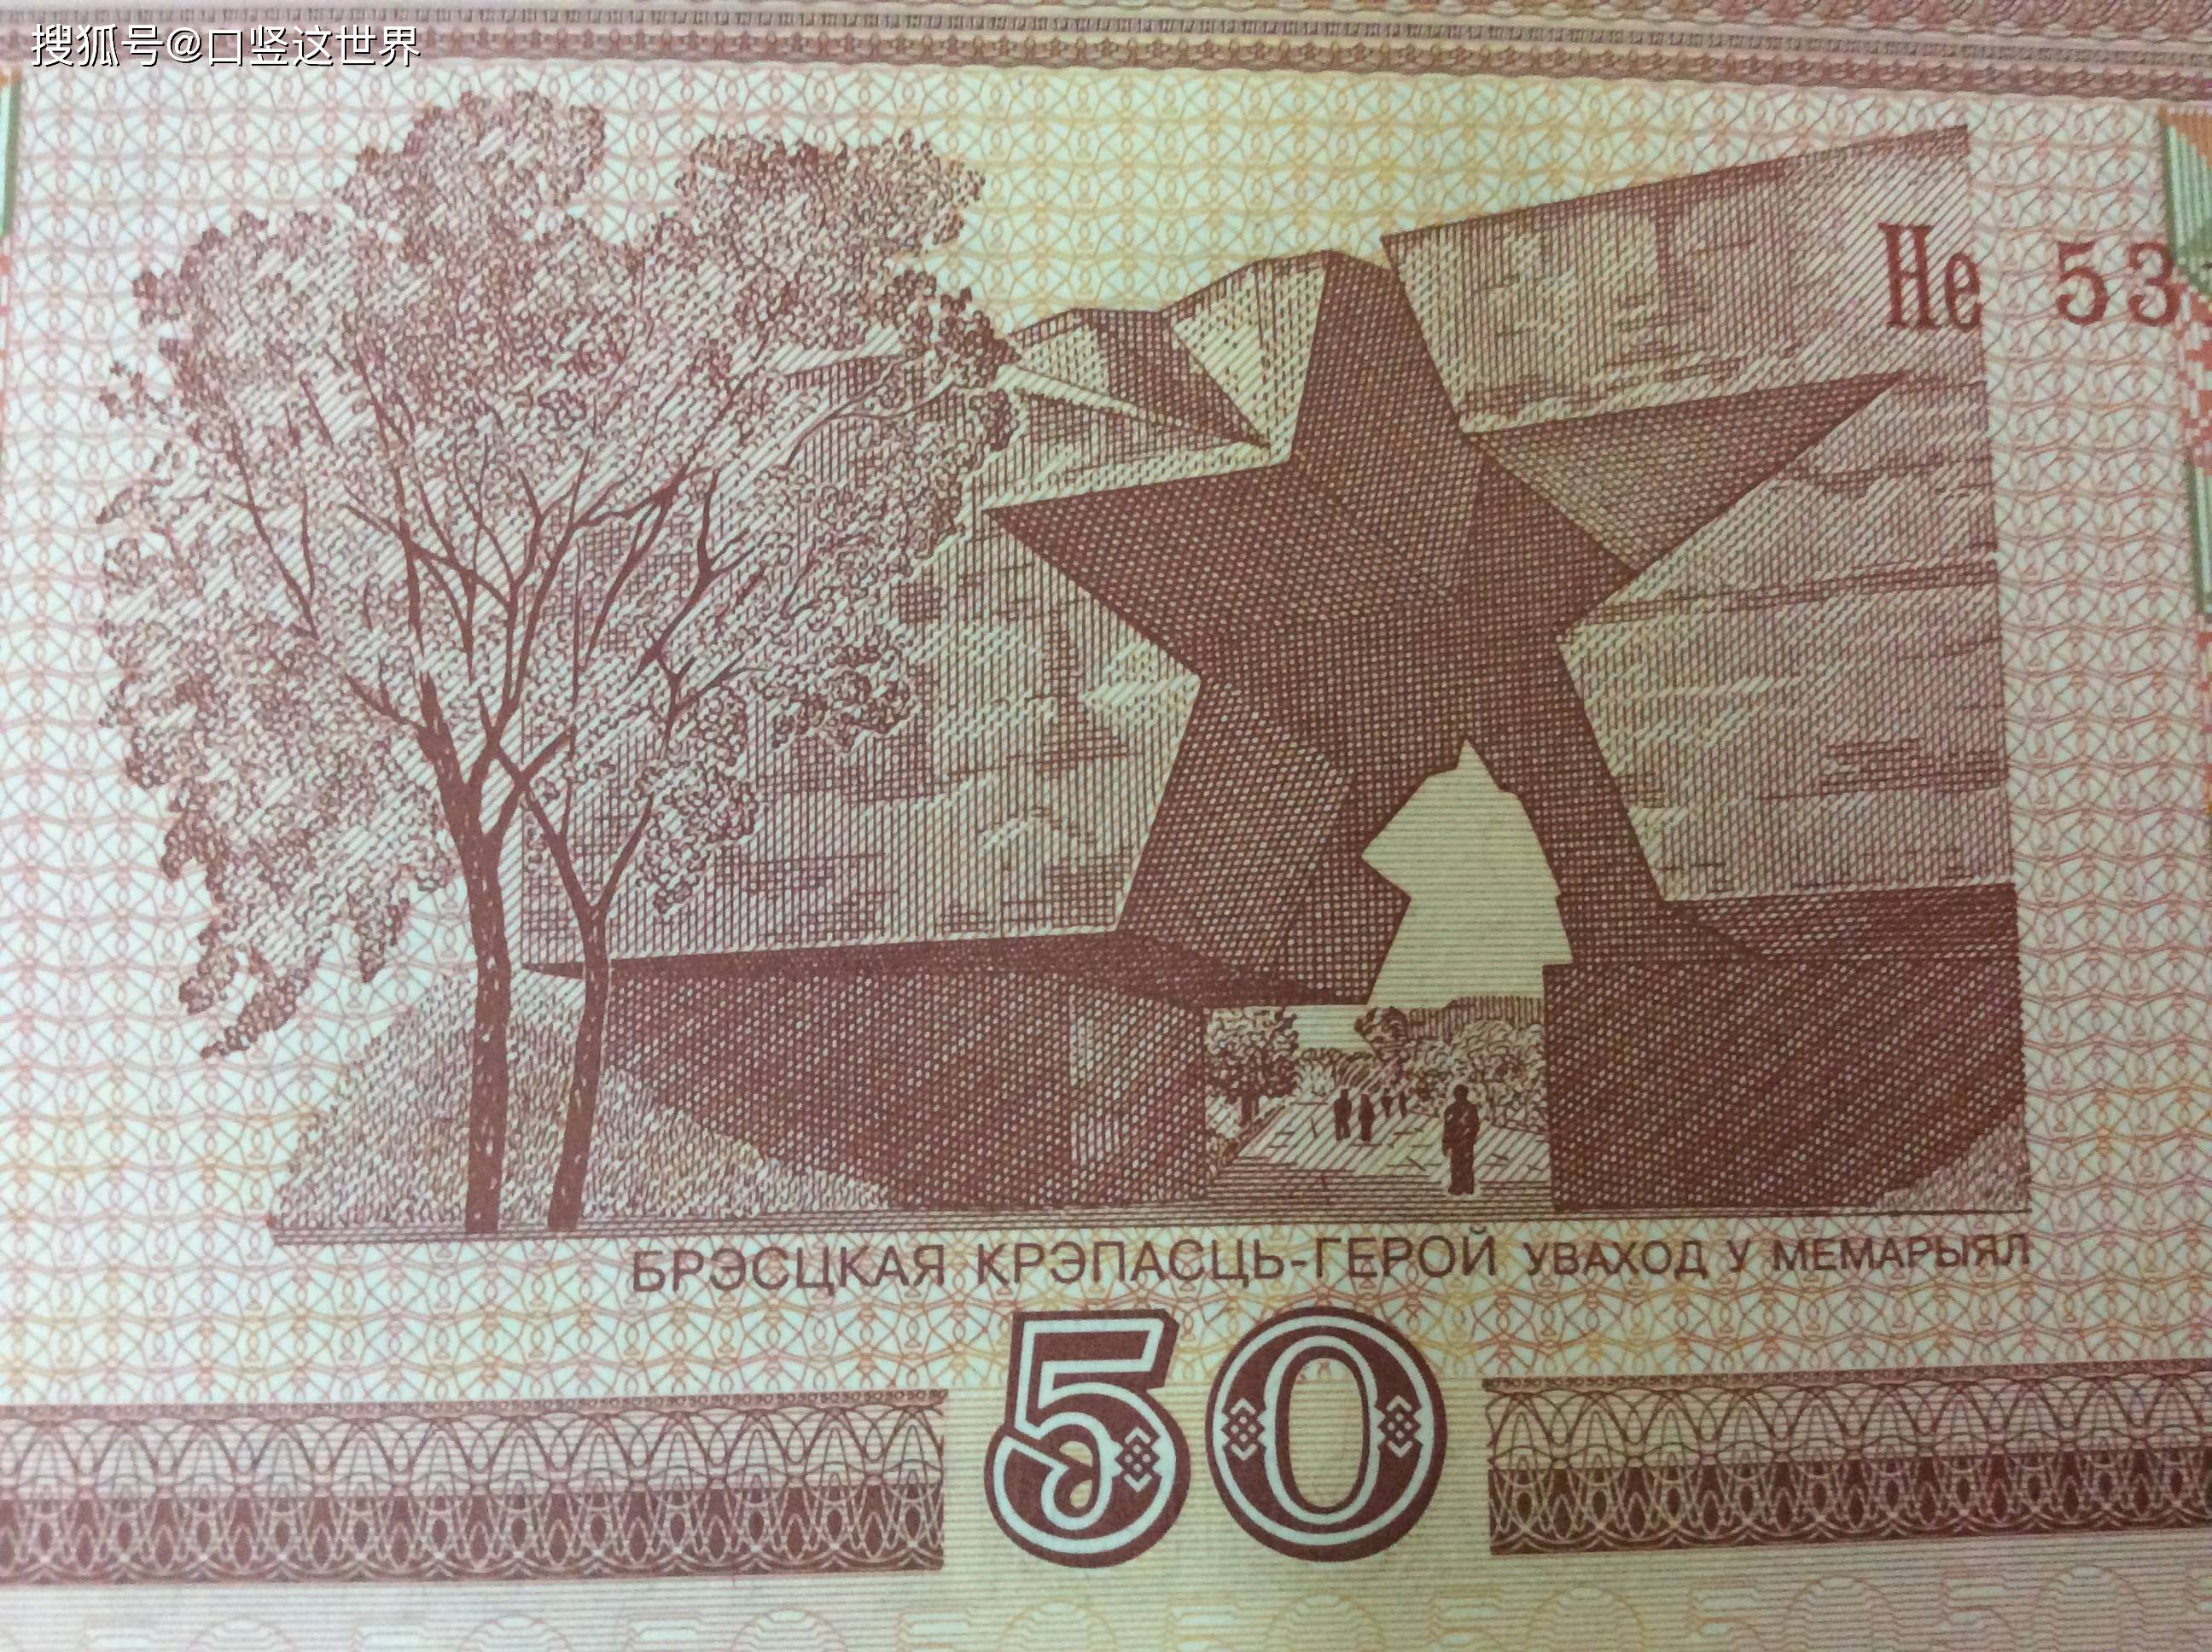 原创白俄罗斯的货币50卢布